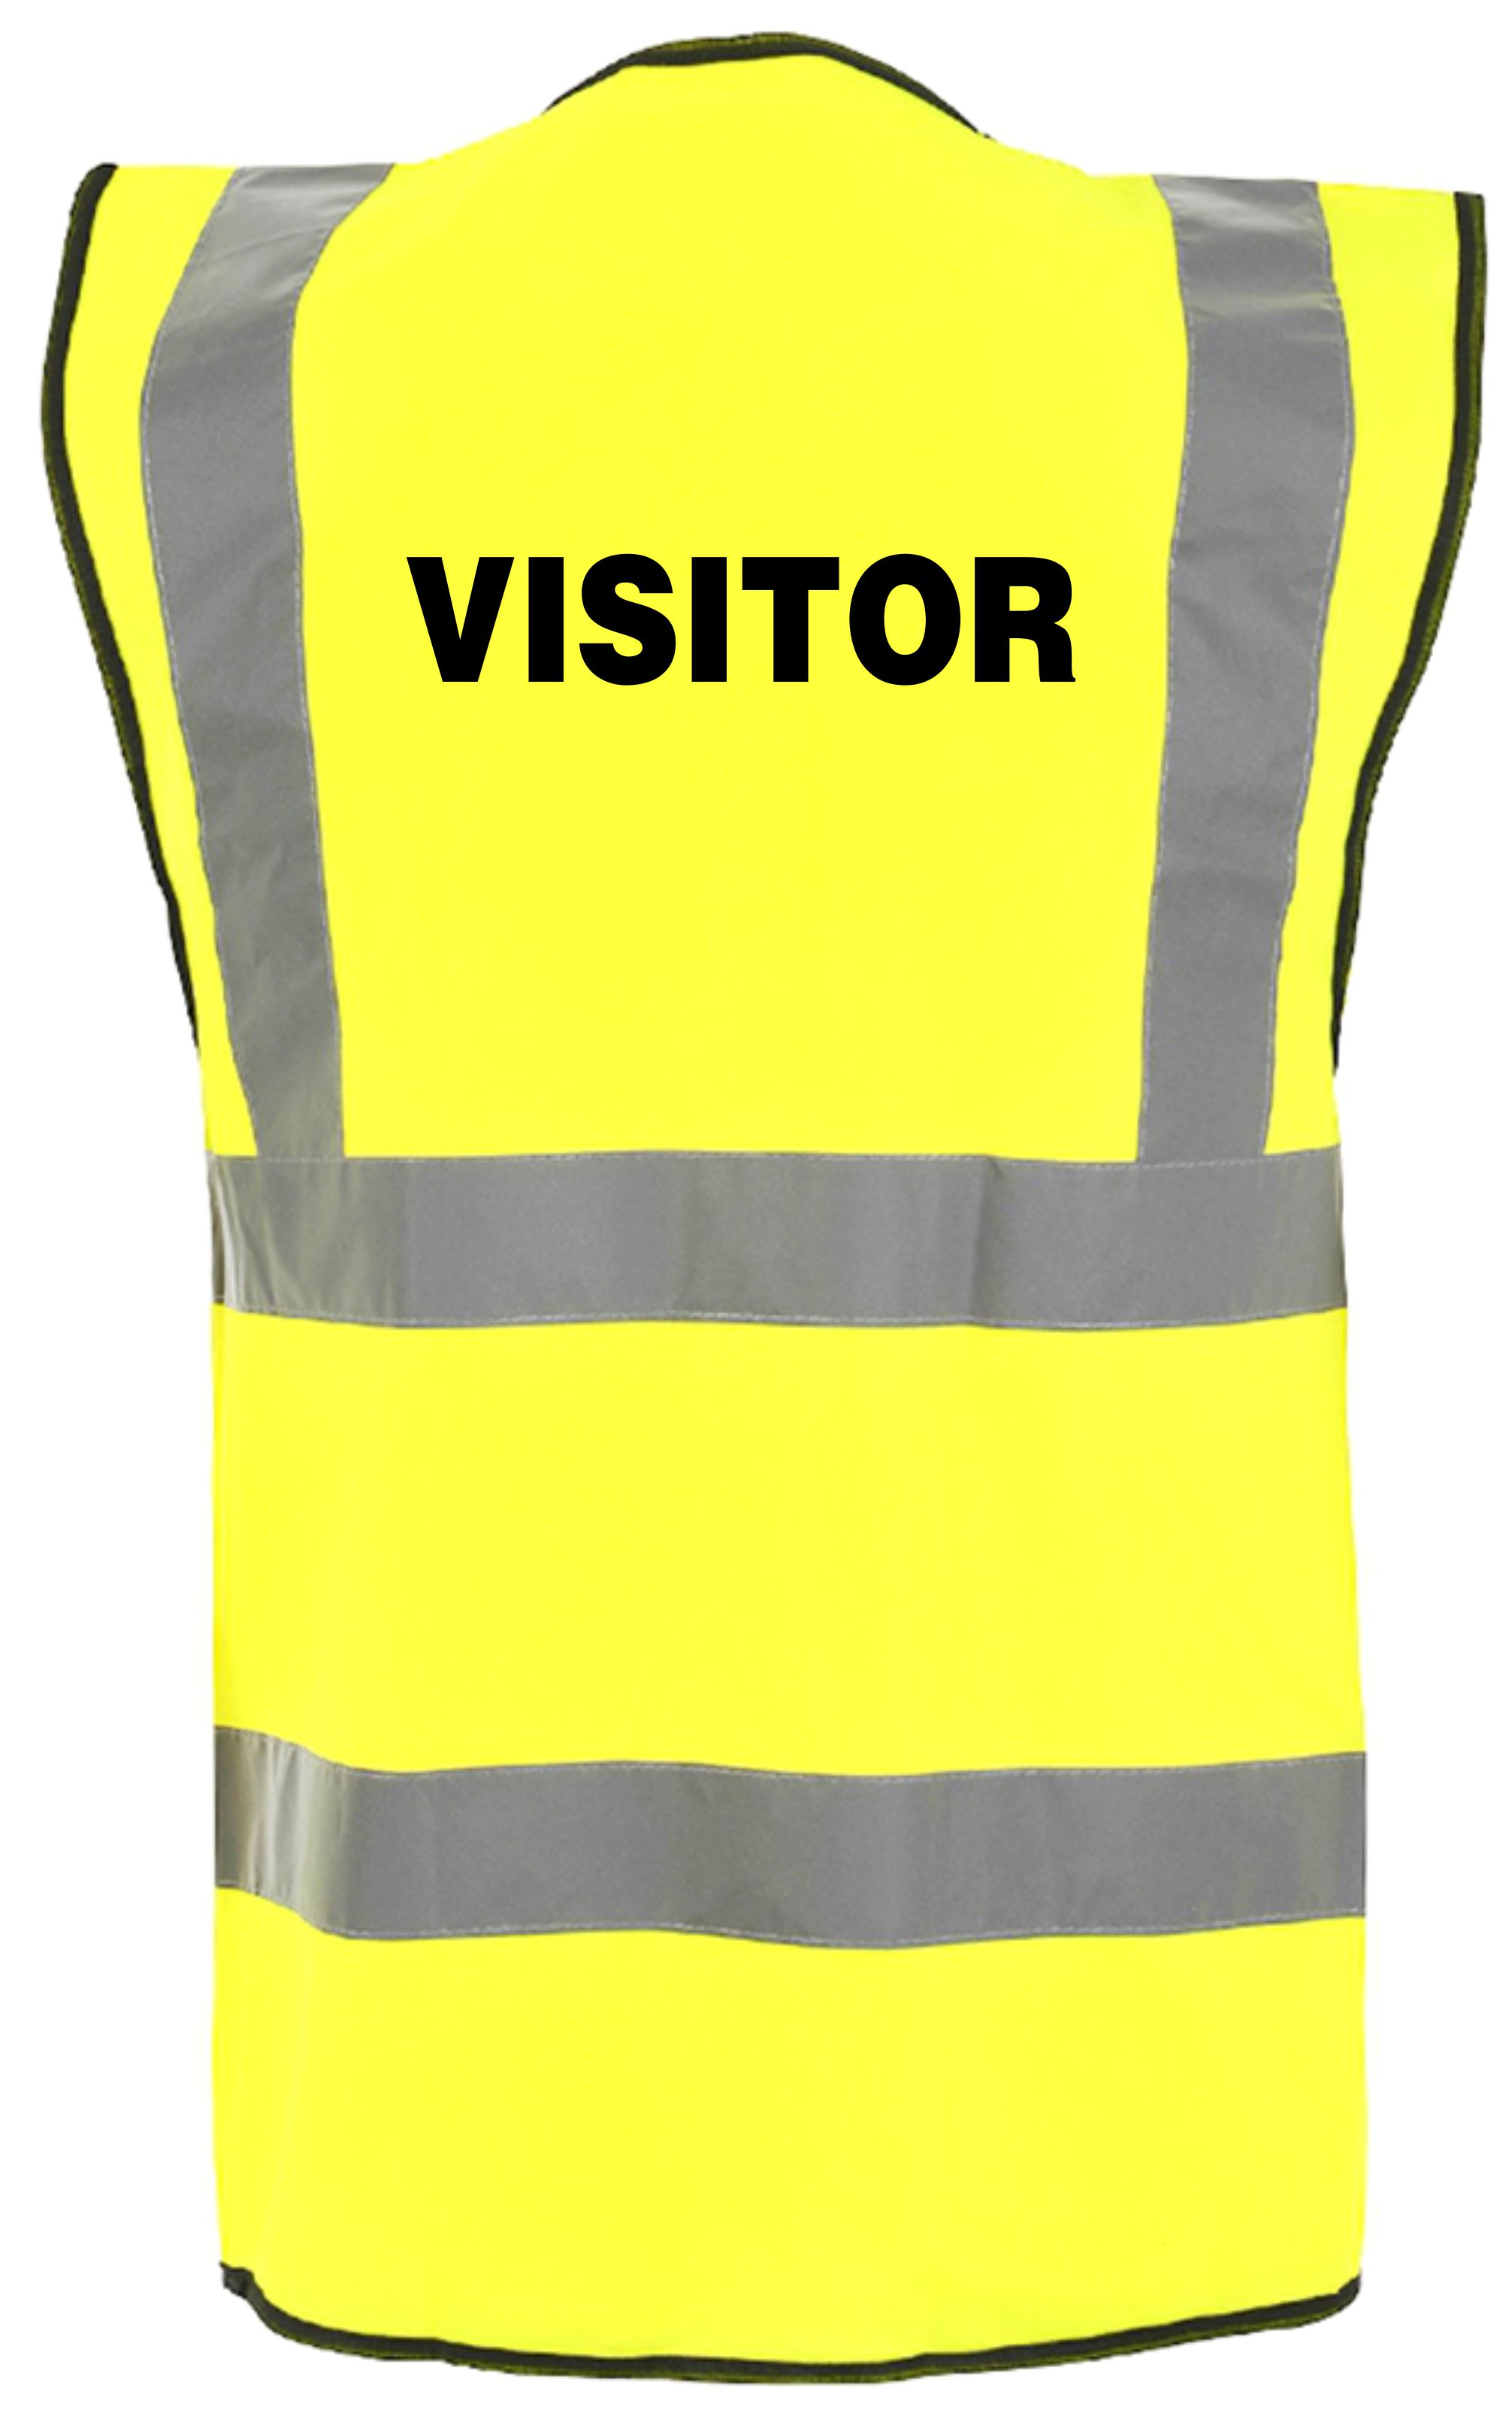 Mua A-SAFETY Pink High Visibility Vest,Reflective Safety Vest Workwear,7  Pockets Hi Vis Durable Vest with Reflective Tapes 4 Lower Pockets,3XL trên  Amazon Mỹ chính hãng 2023 | Fado